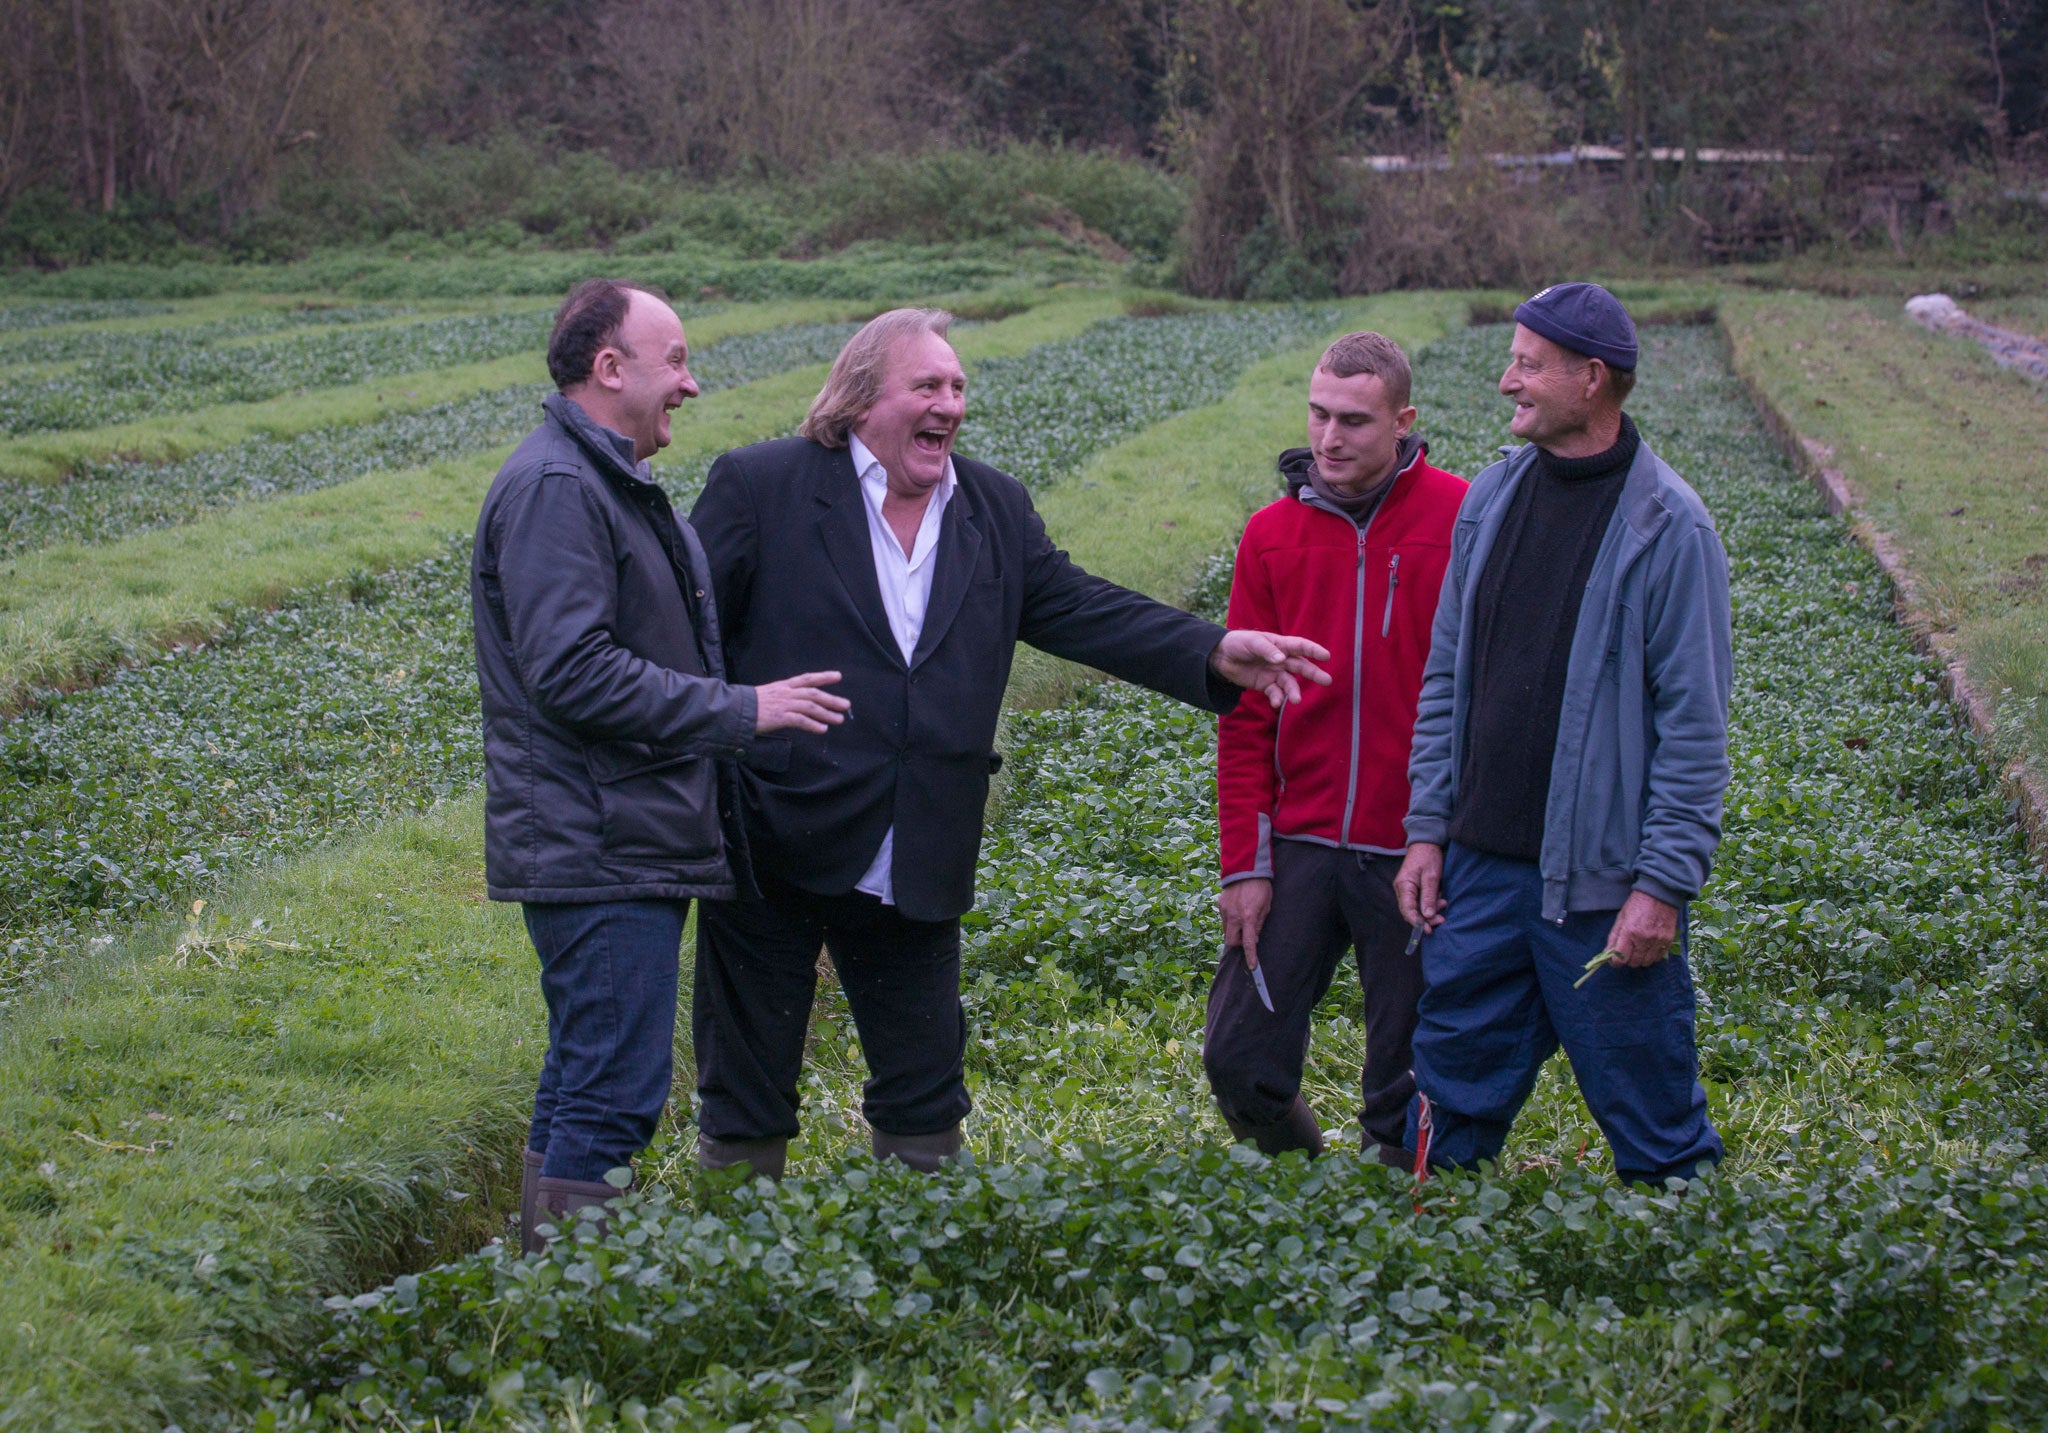 Laurent Audiot and Gérard Depardieu at a watercress farm in Méréville, France